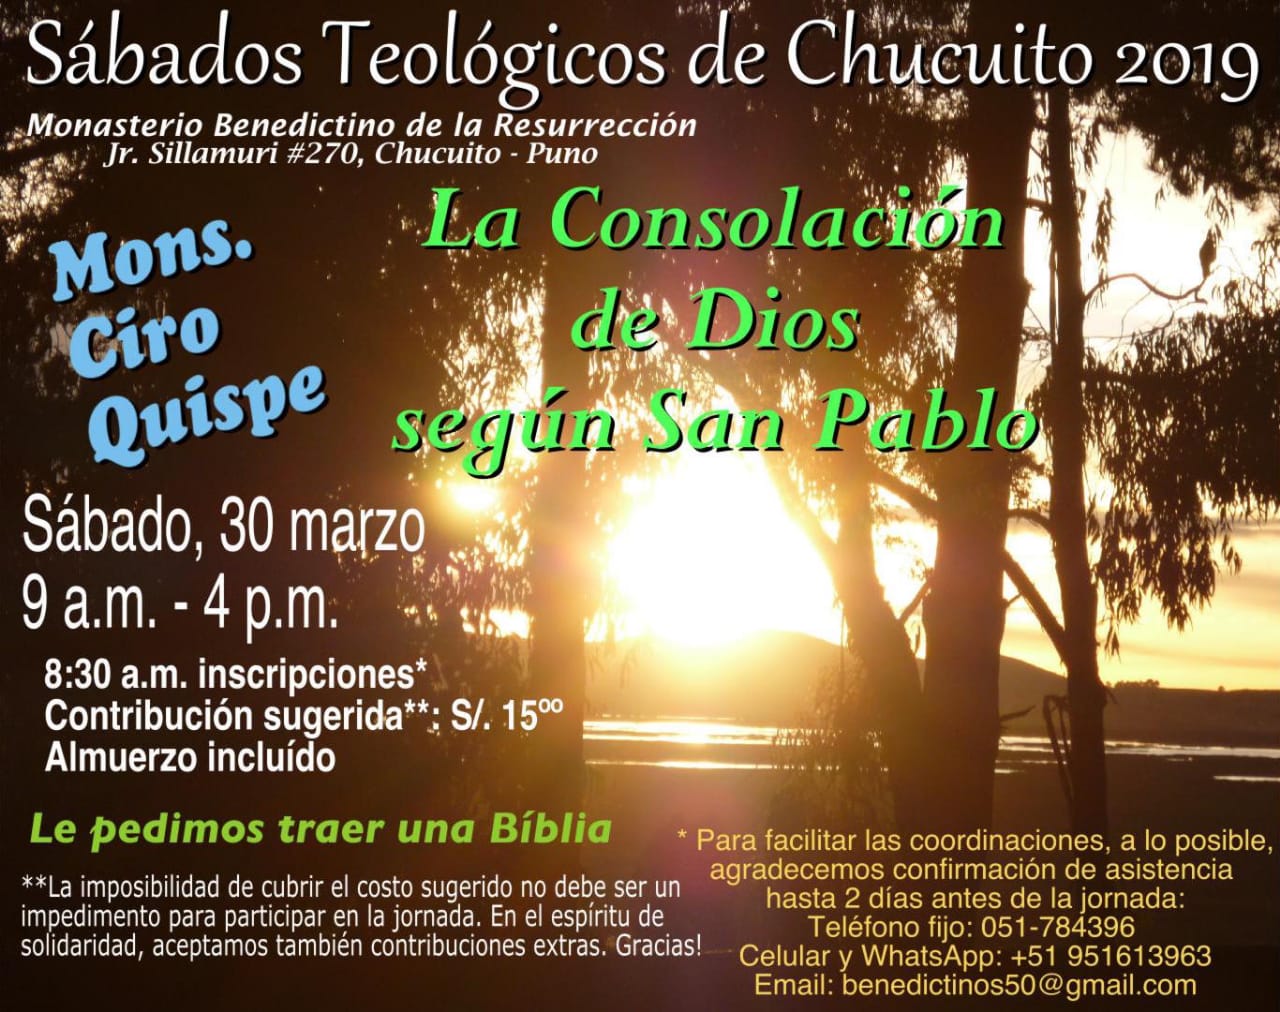 Puno: Invitación para la primera jornada de los “Sábados Teológicos de Chucuito 2019”